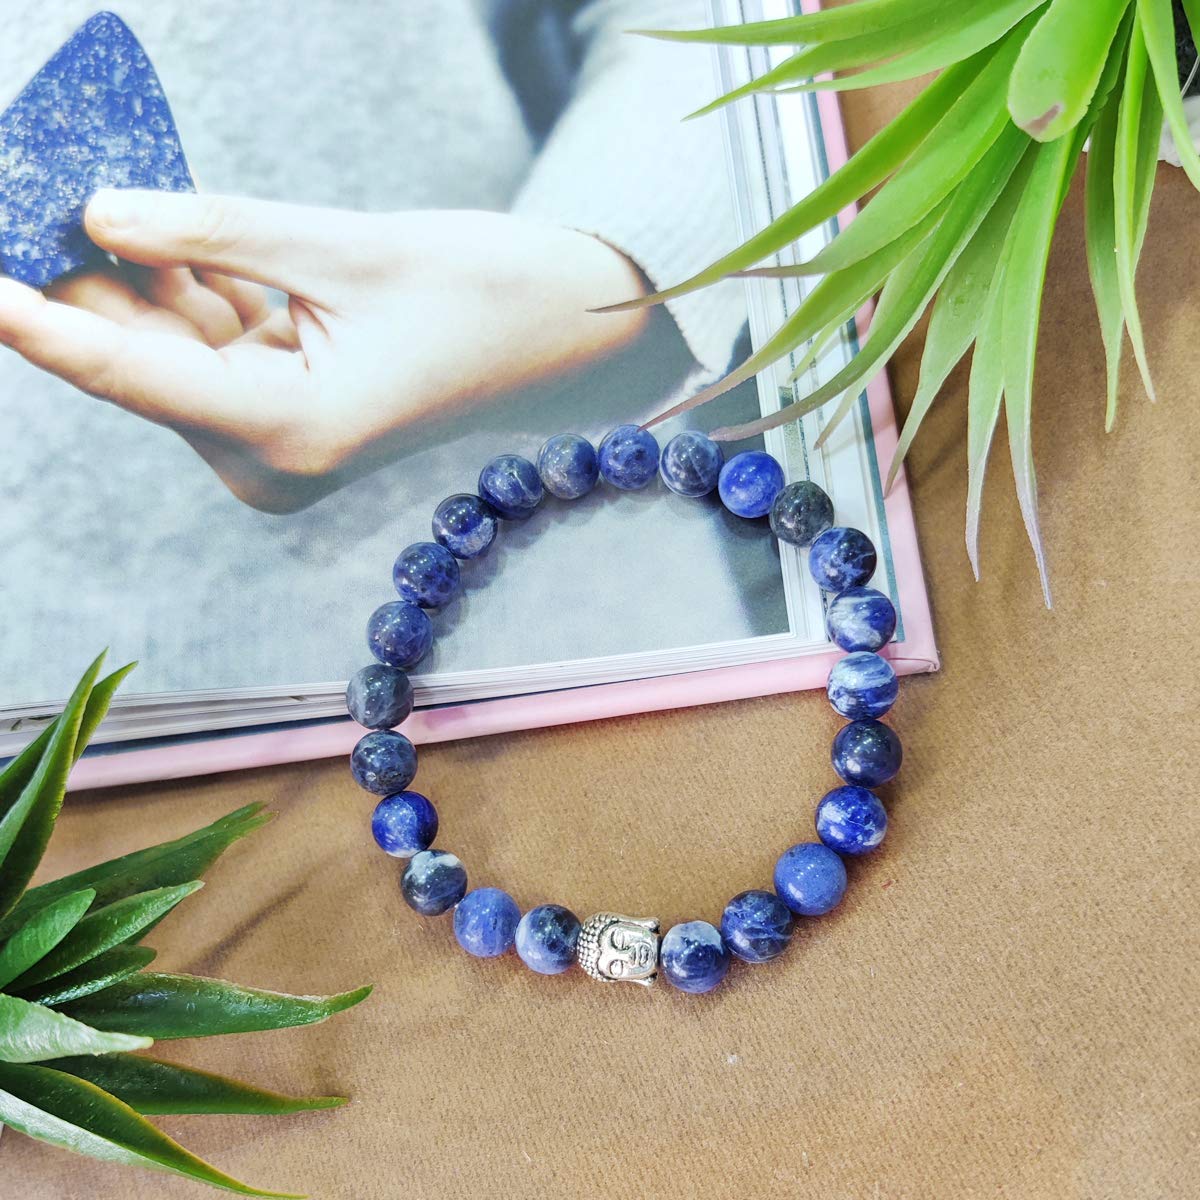 Bluequeen Sodalite Crystal Elastic 8mm Stretch Crystal Yoga,Meditation Buddha Bracelet